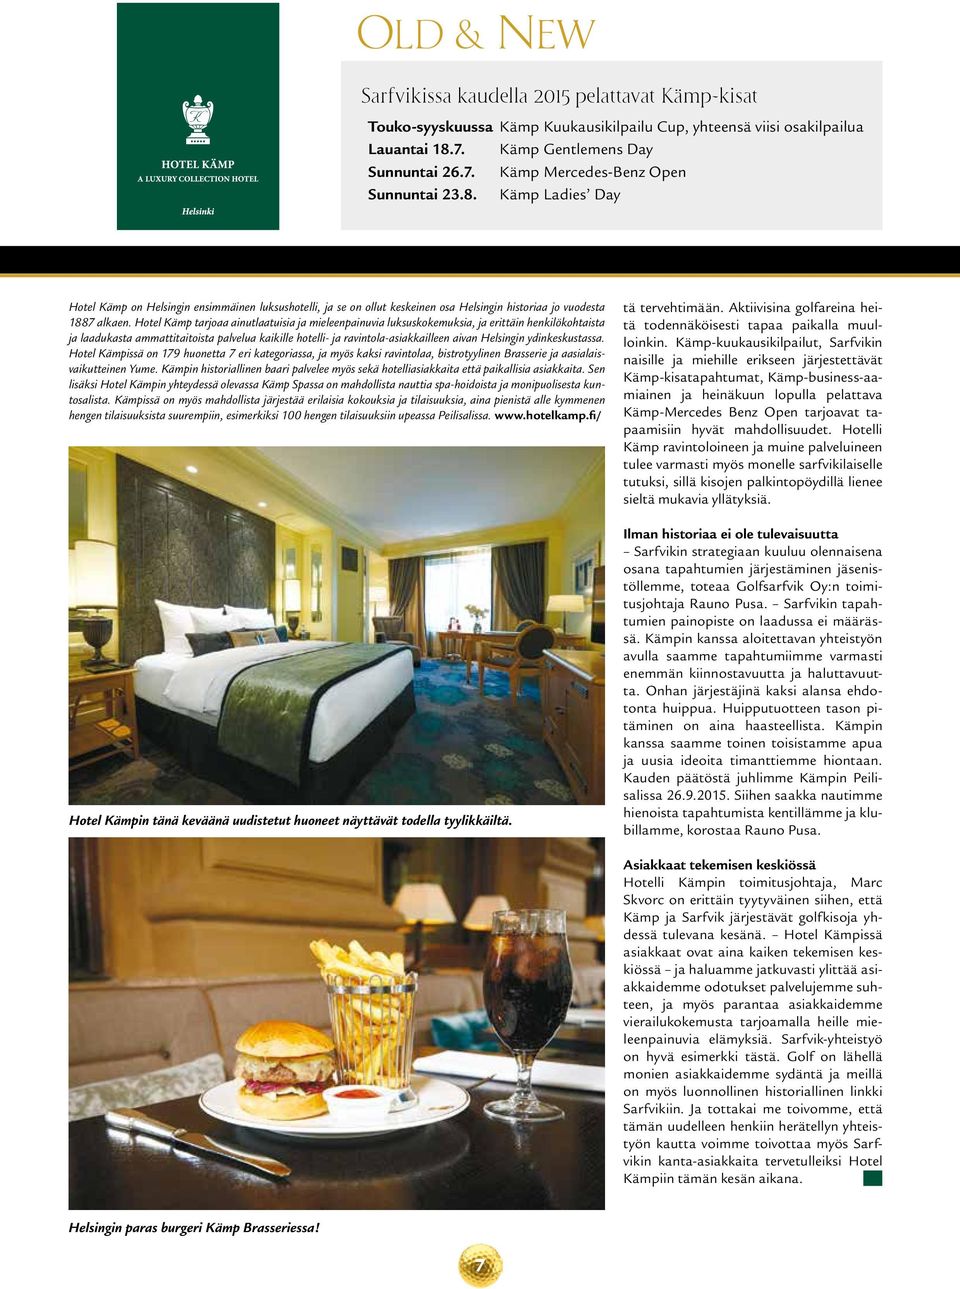 Hotel Kämp tarjoaa ainutlaatuisia ja mieleenpainuvia luksuskokemuksia, ja erittäin henkilökohtaista ja laadukasta ammattitaitoista palvelua kaikille hotelli- ja ravintola-asiakkailleen aivan